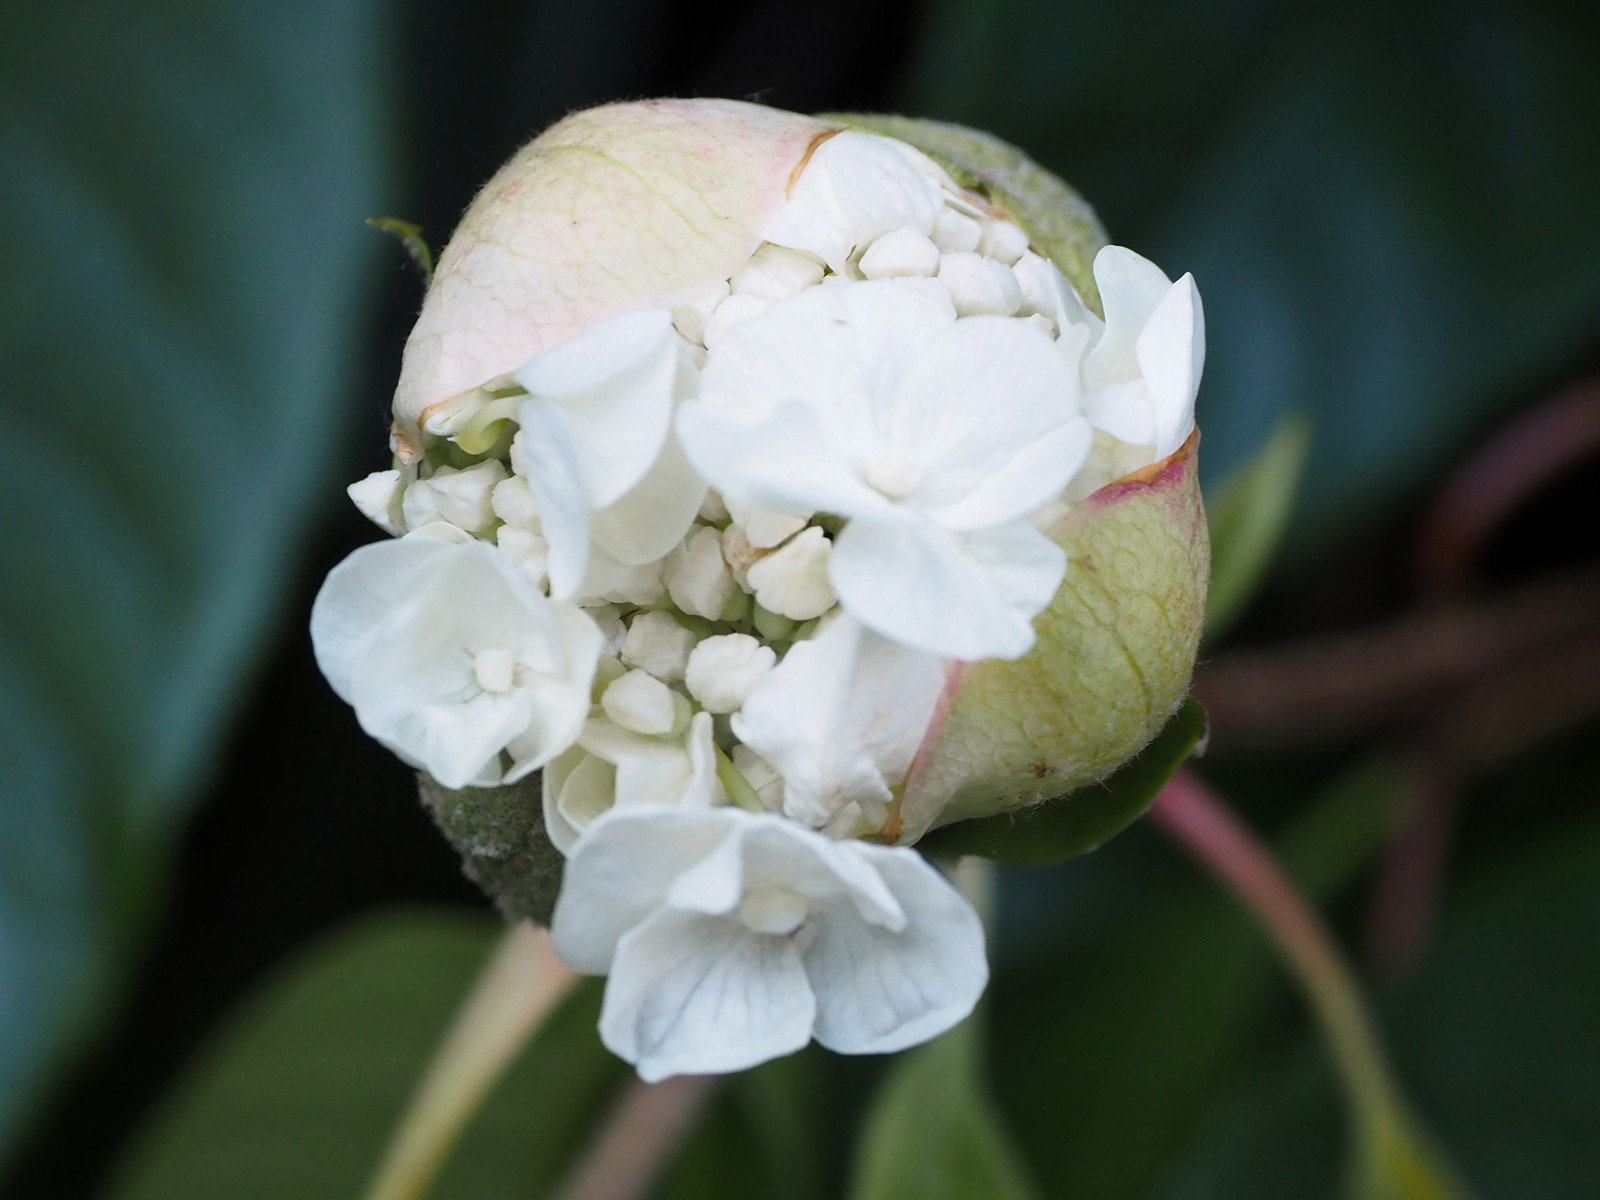 Image of Hydrangea seemanii flower close-up